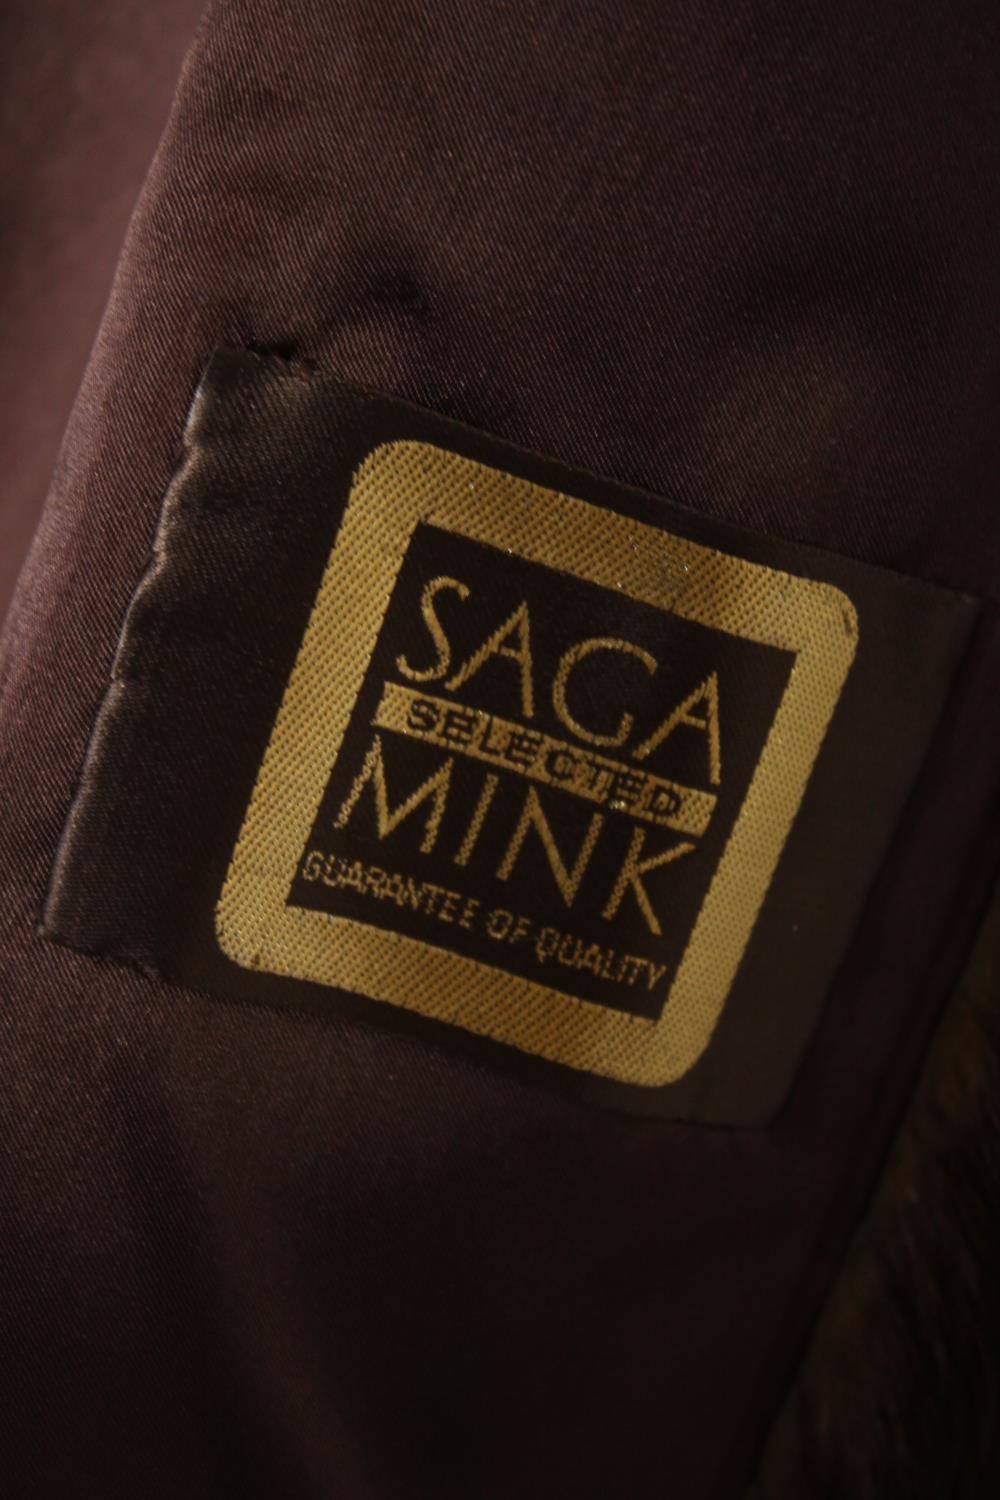 A vintage Mink fur coat made by Saga. - Image 4 of 5